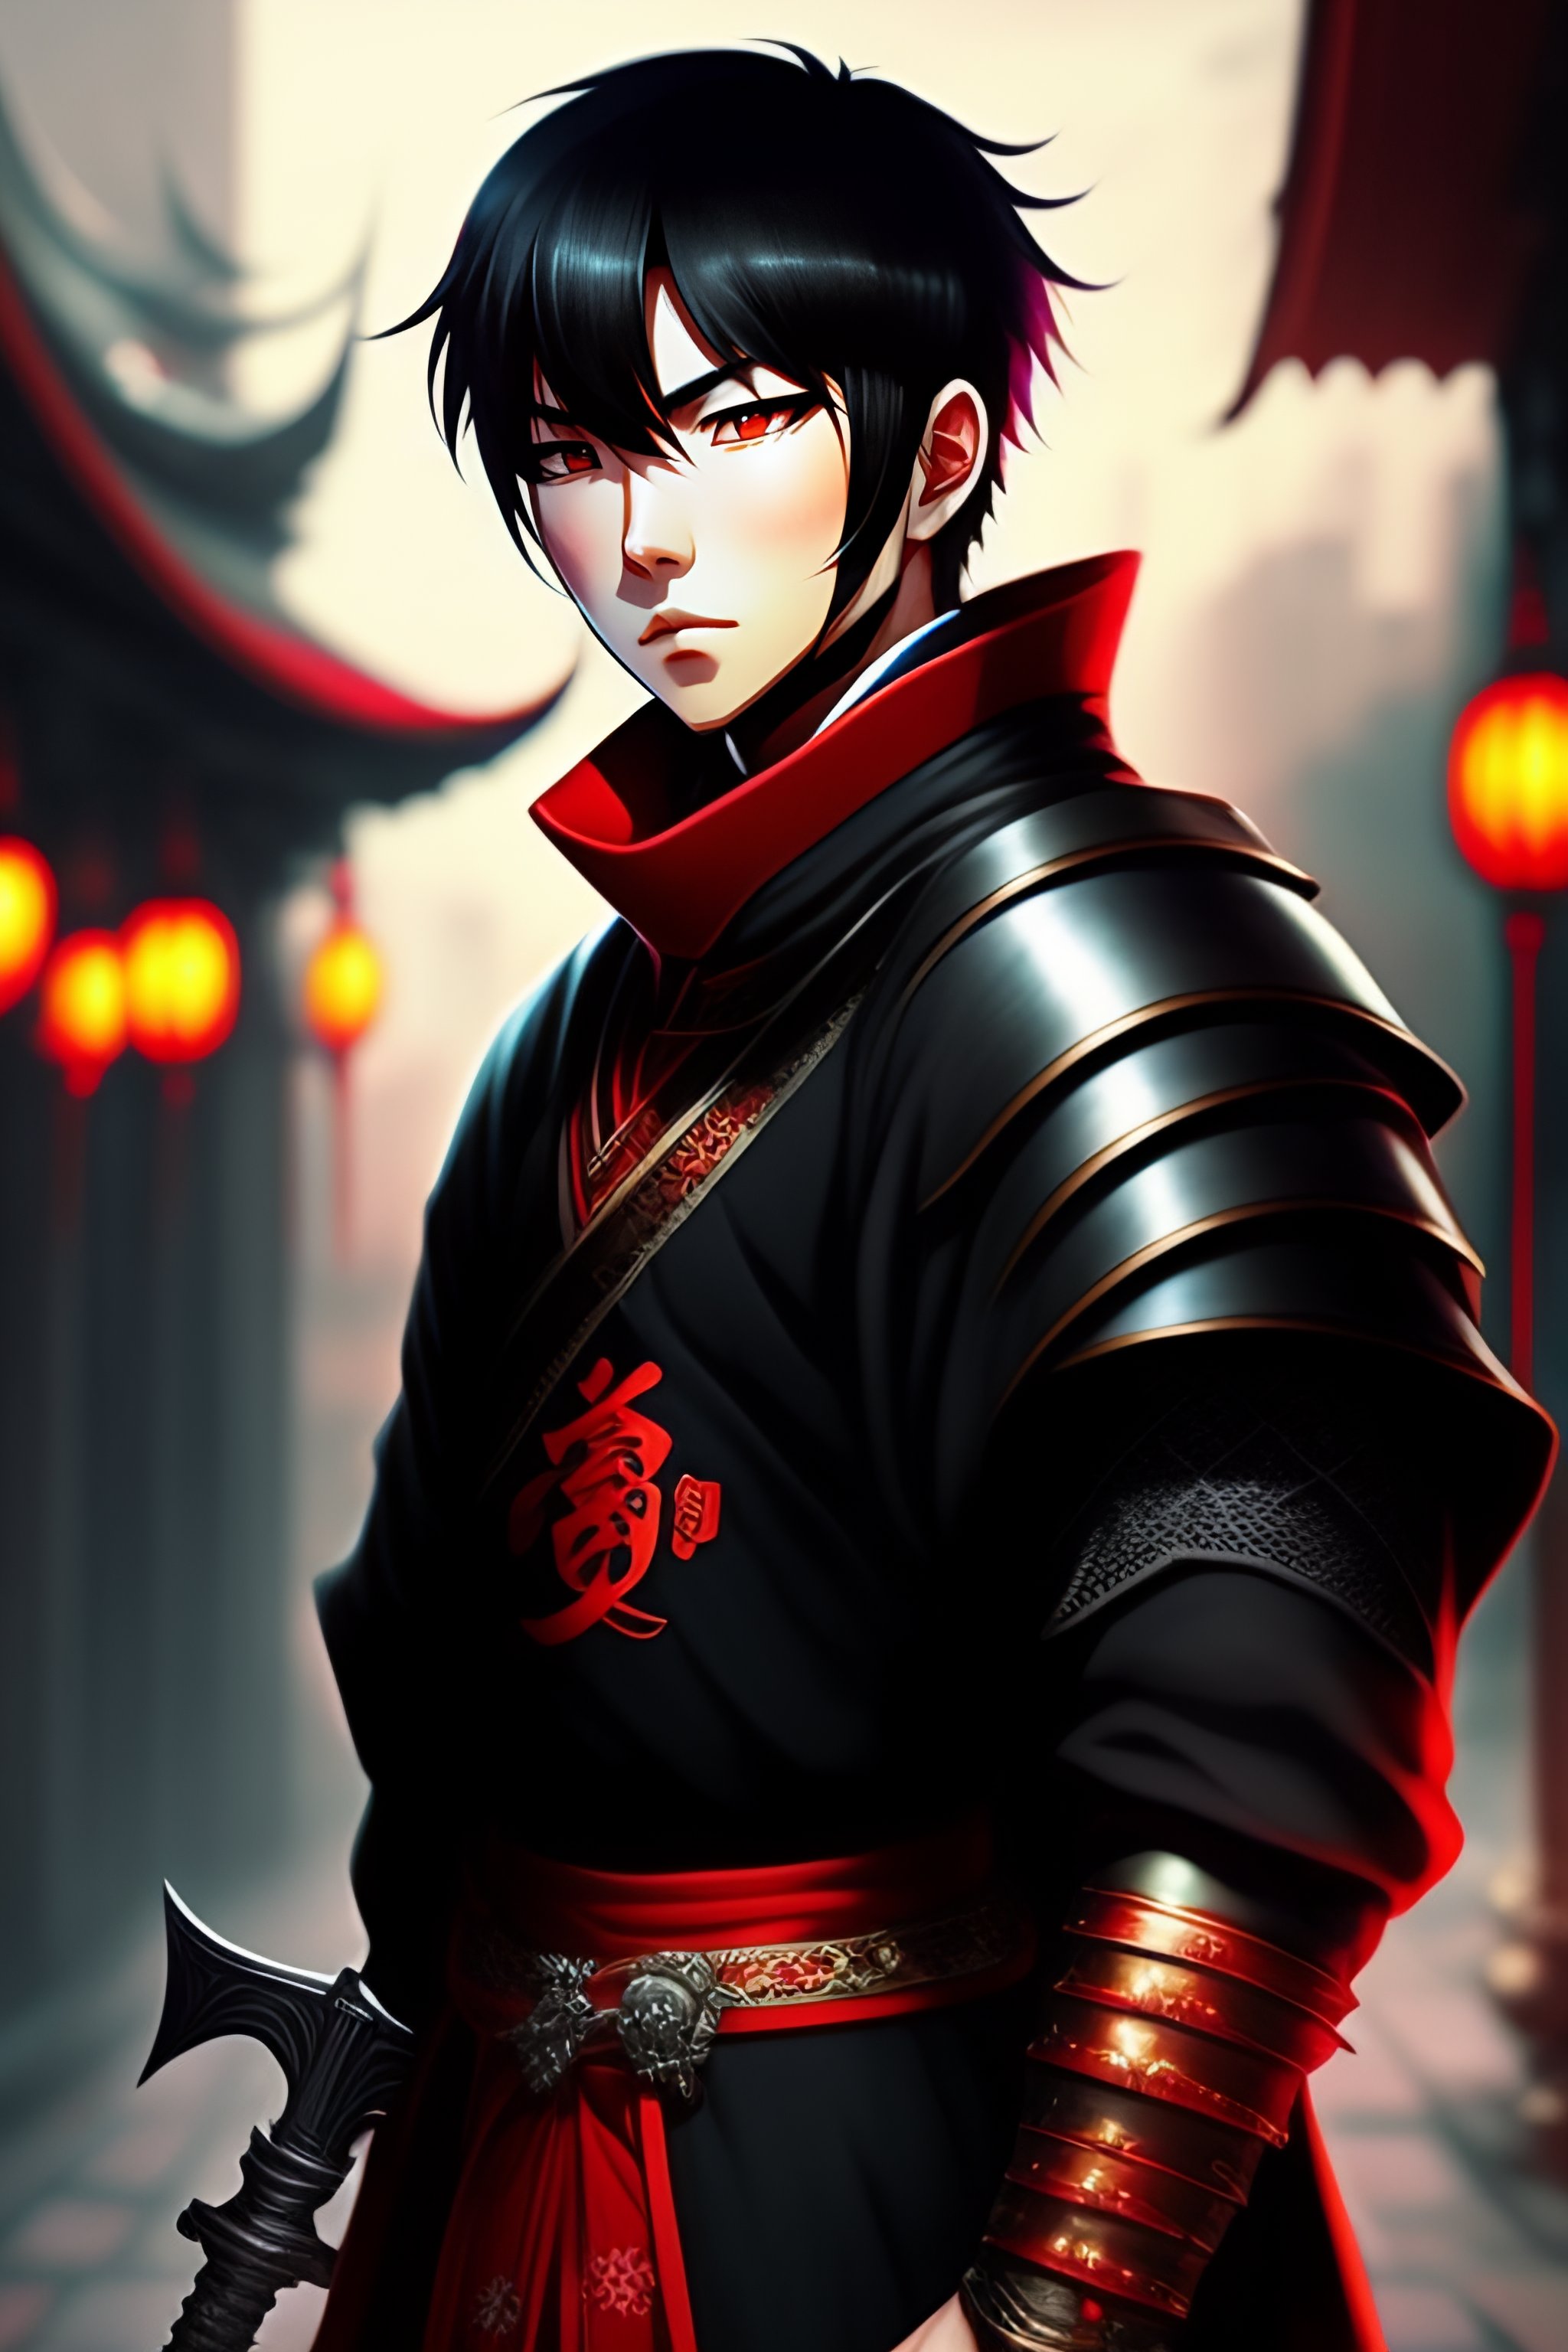 Lexica - Anime style boy black hair, deep focus, medieval knight cloths ...